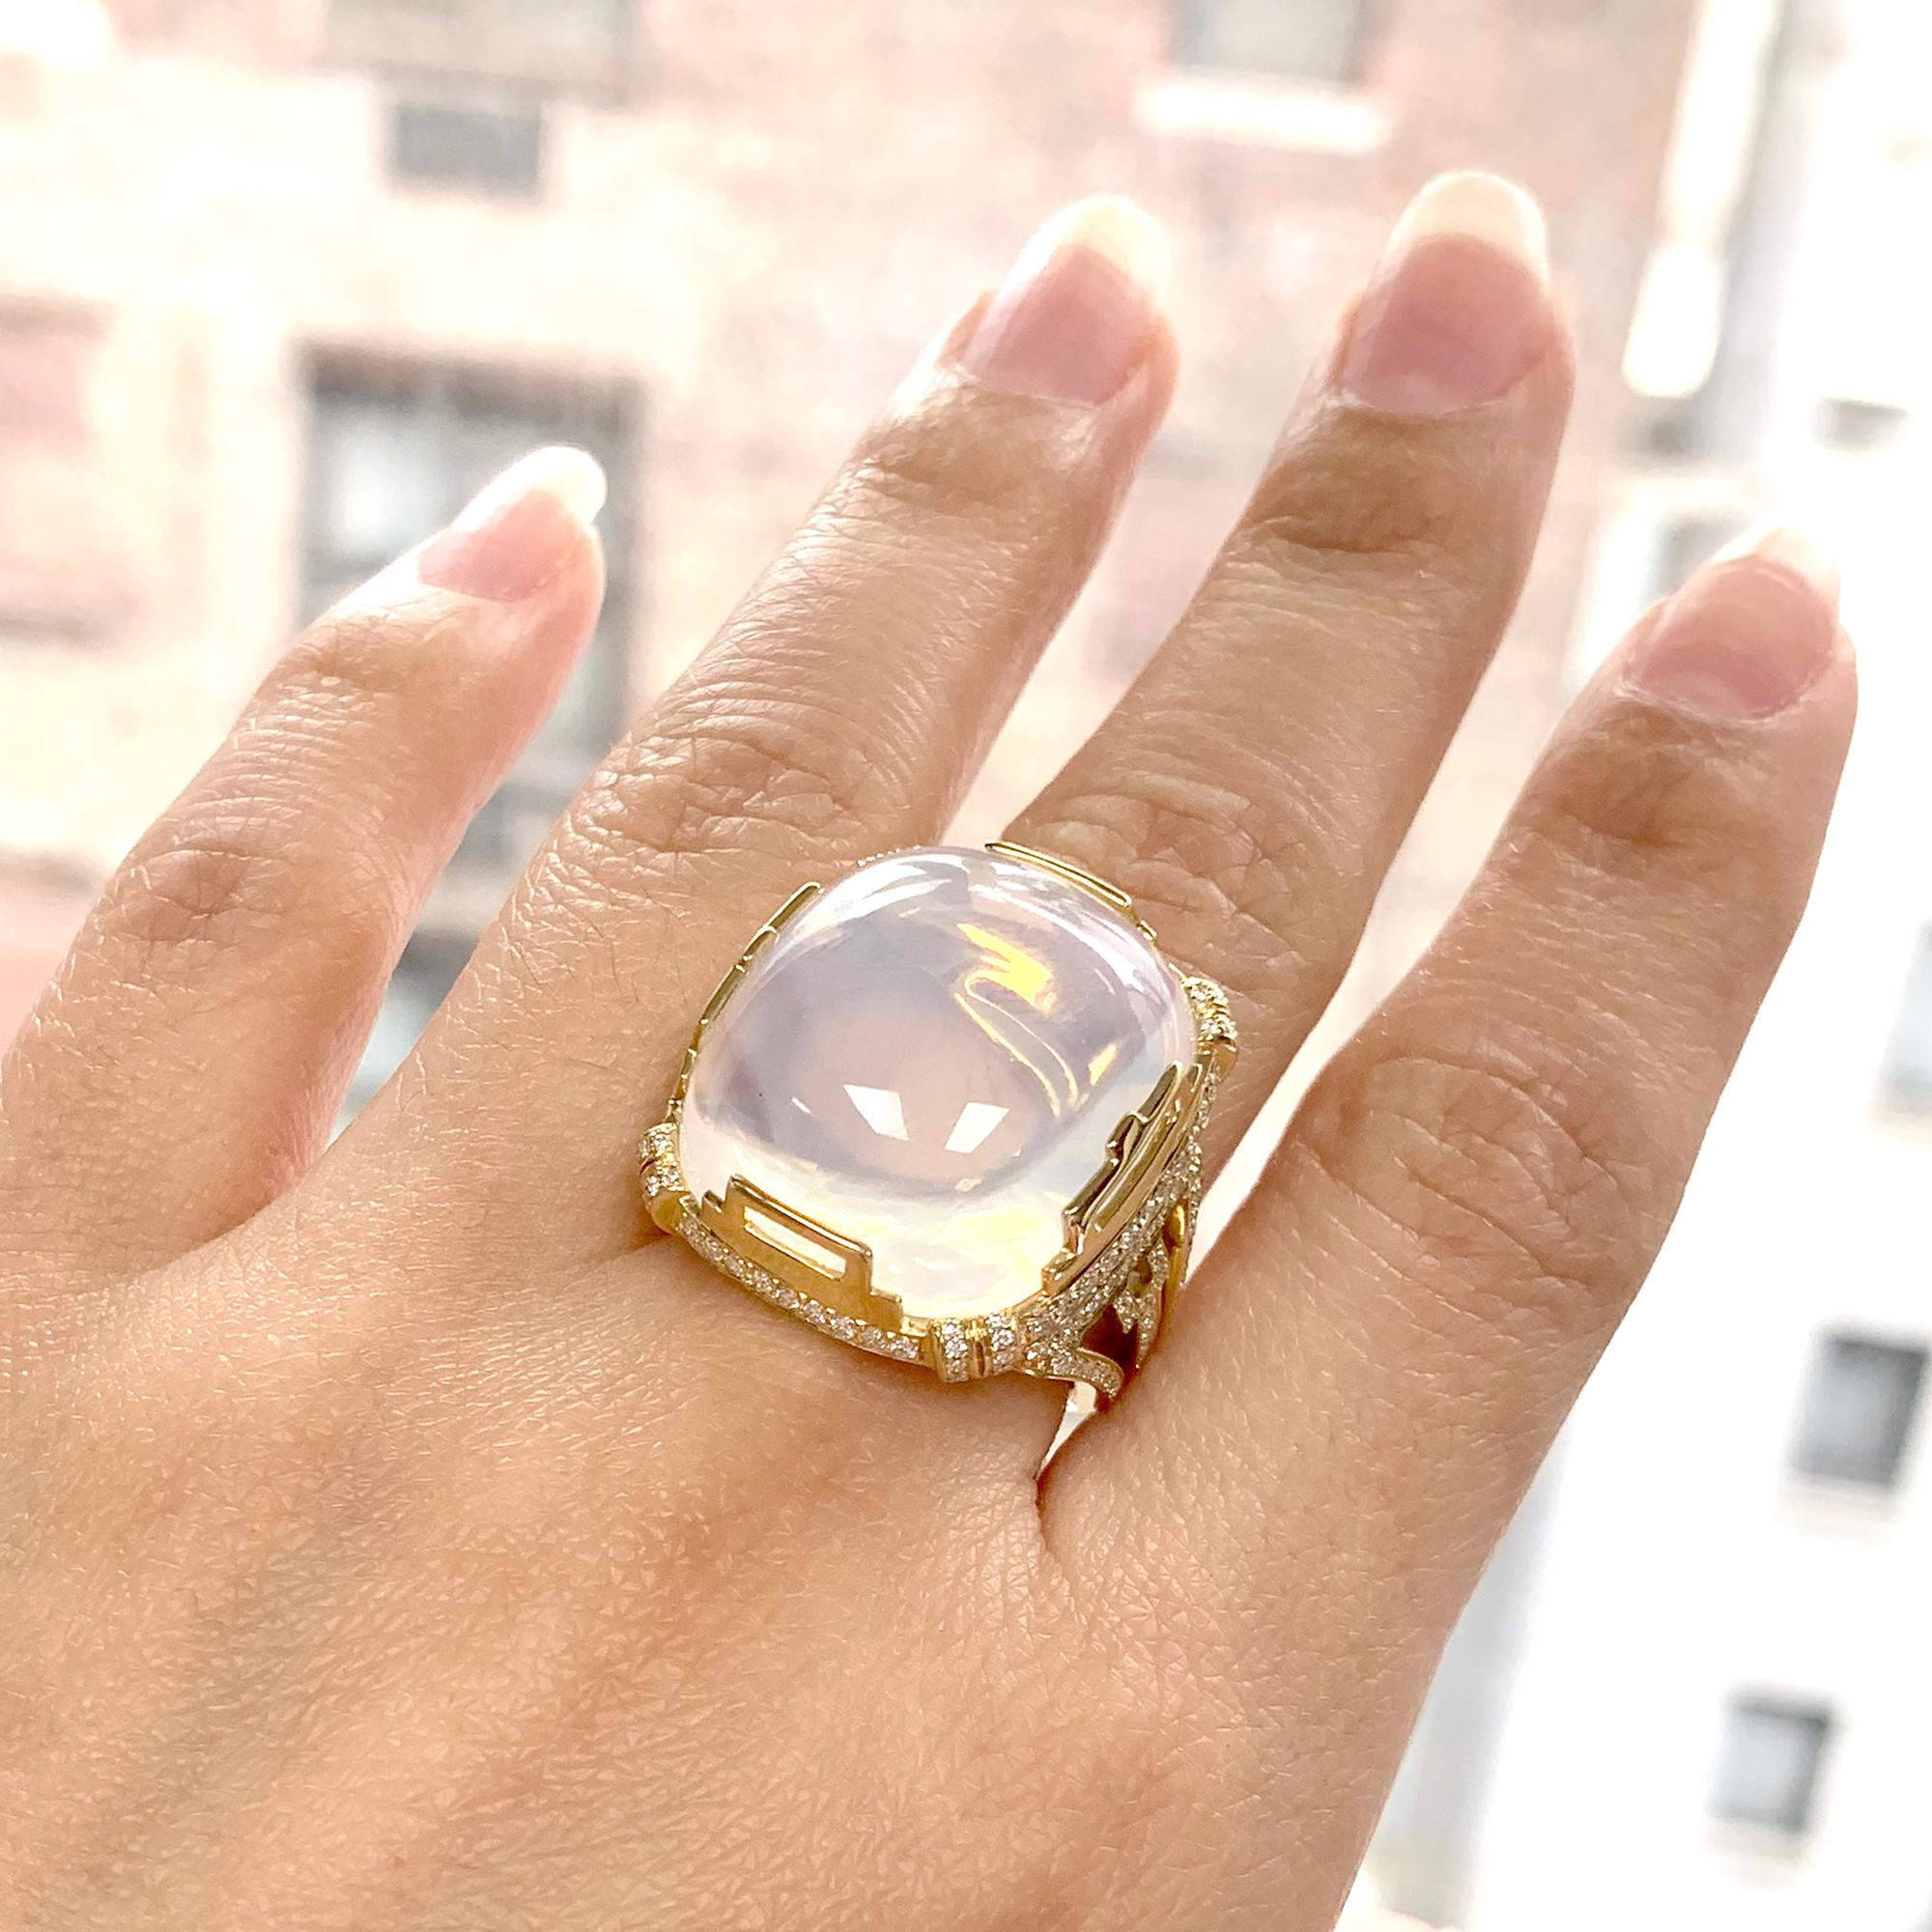 Bague en or jaune 18 carats avec cabochon en forme de coussin en quartz lunaire et diamants, de la Collection 'Rock 'N Roll'. 

Taille de la pierre : 21,50 x 19,50 mm

Diamants : G-H / VS, Approx. Poids : 1,02 carats 